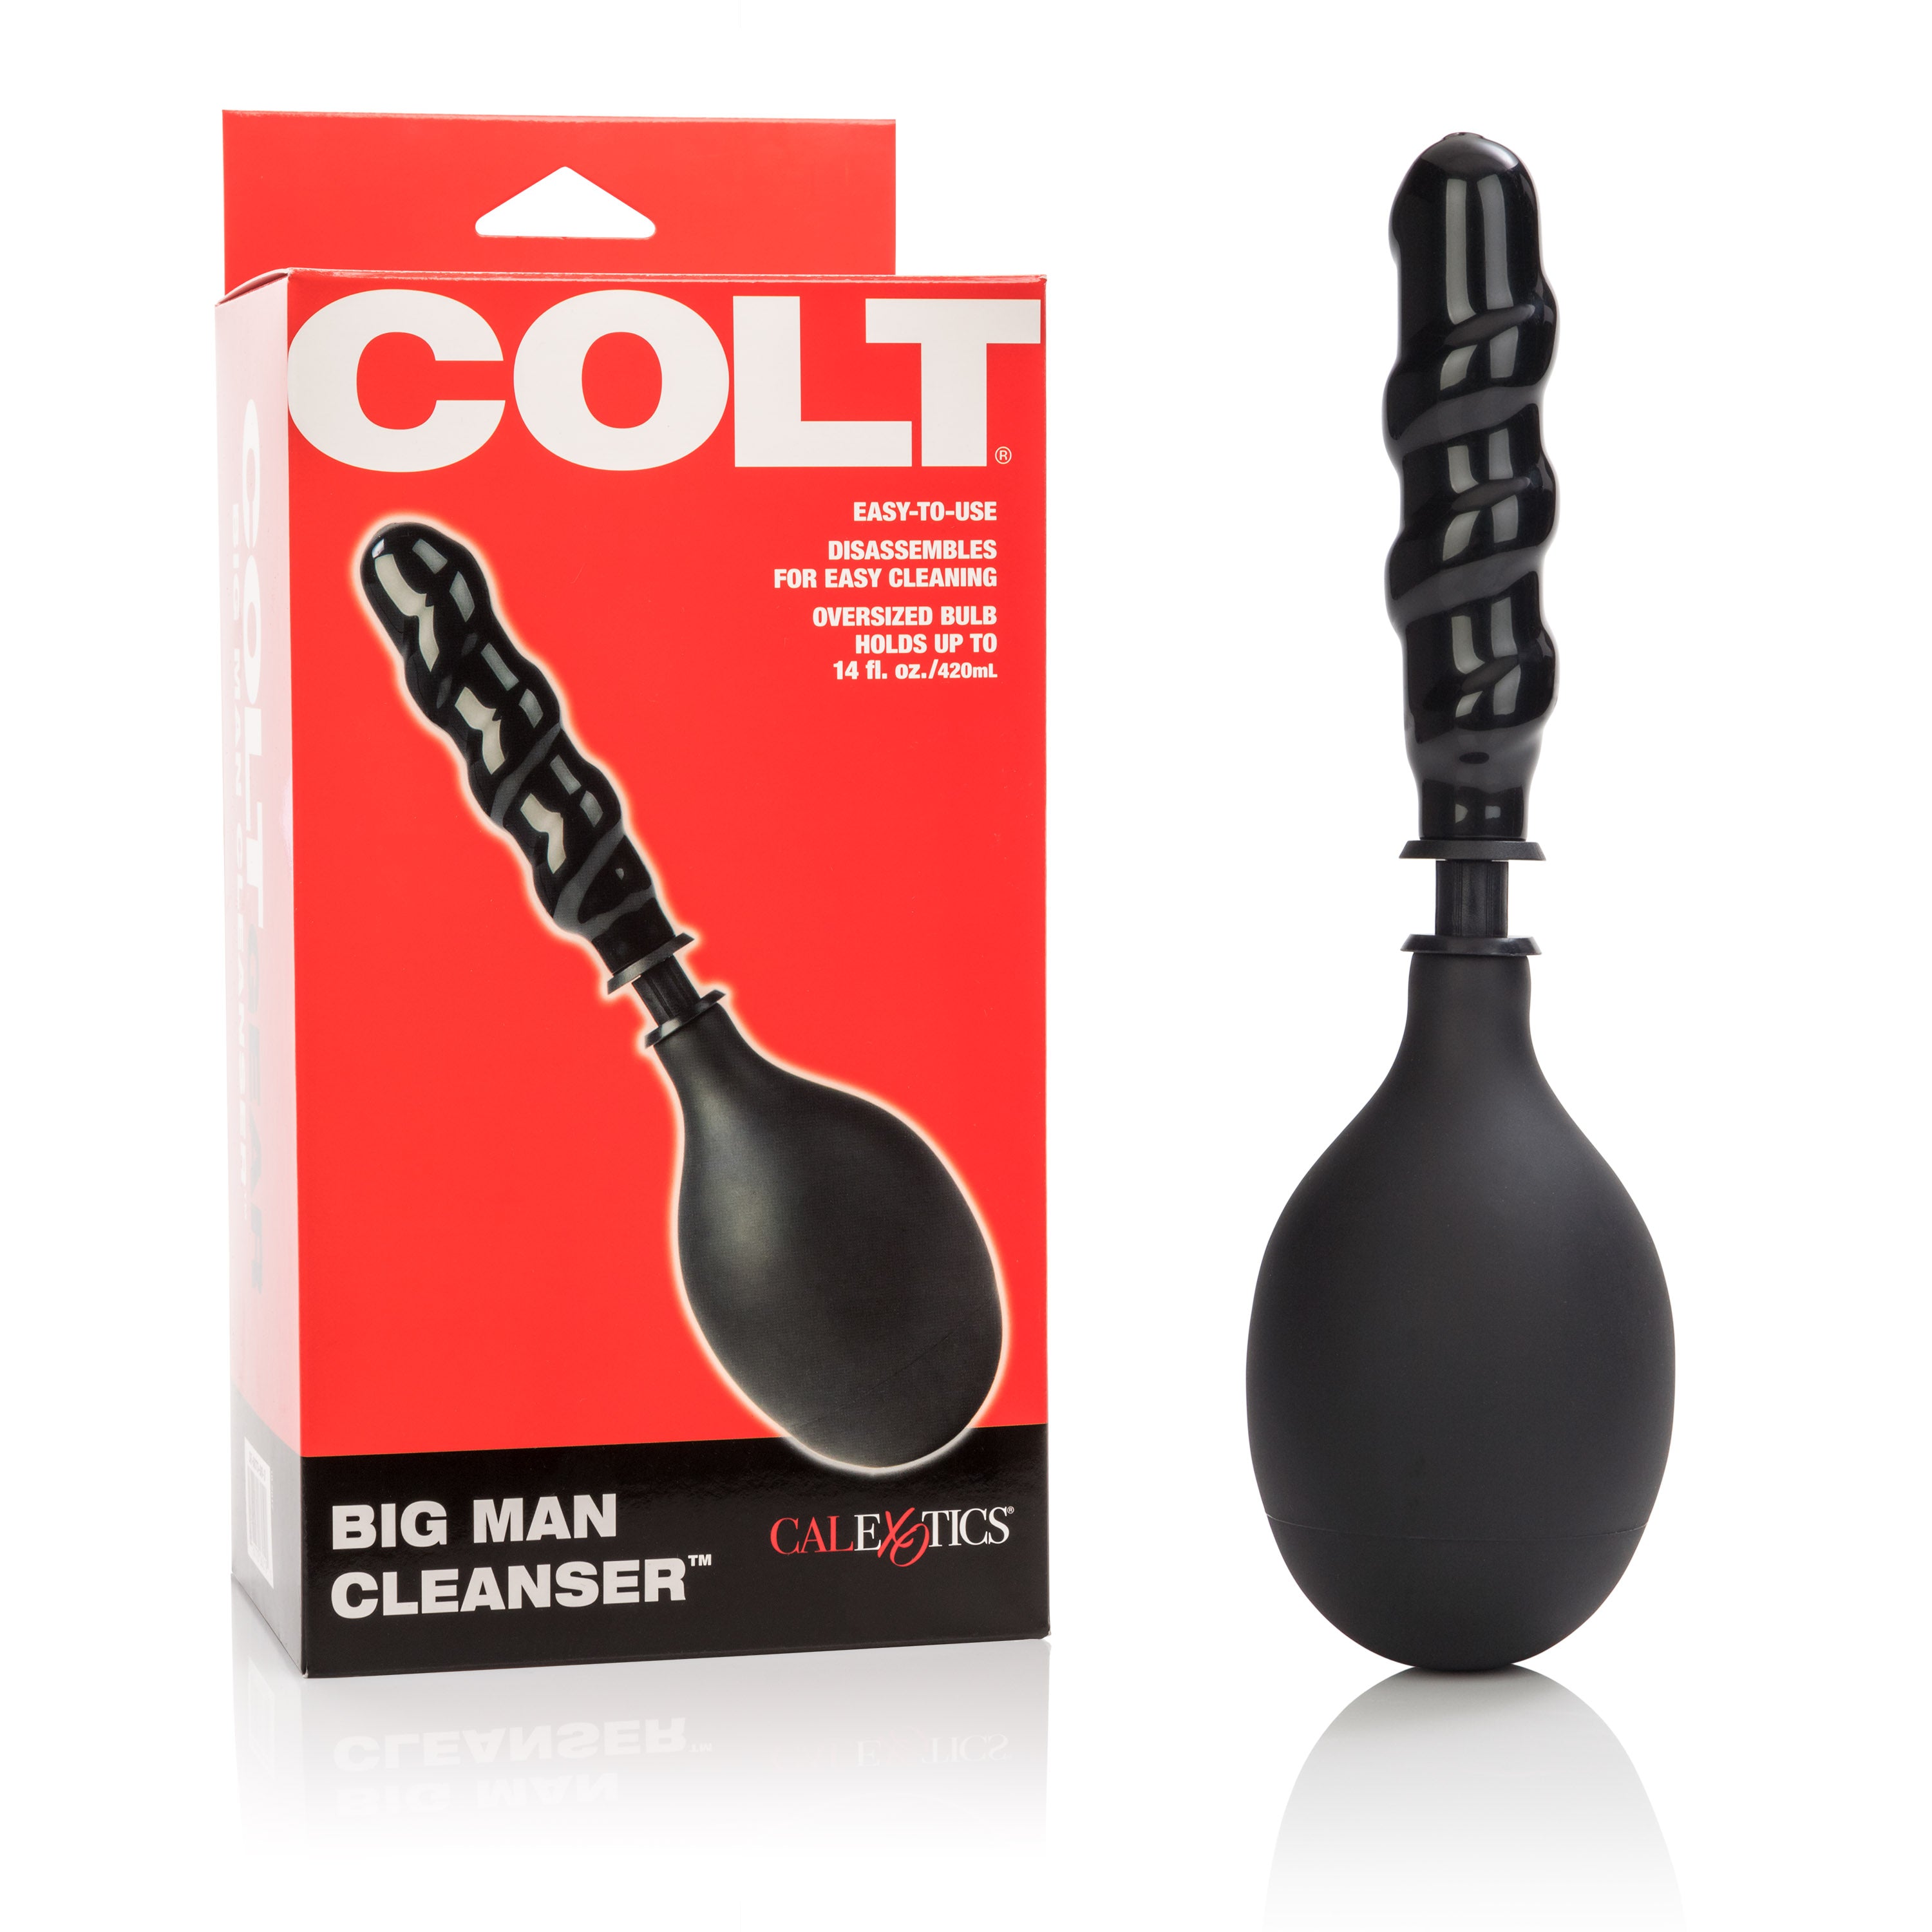 Colt Big Man Cleanser-1